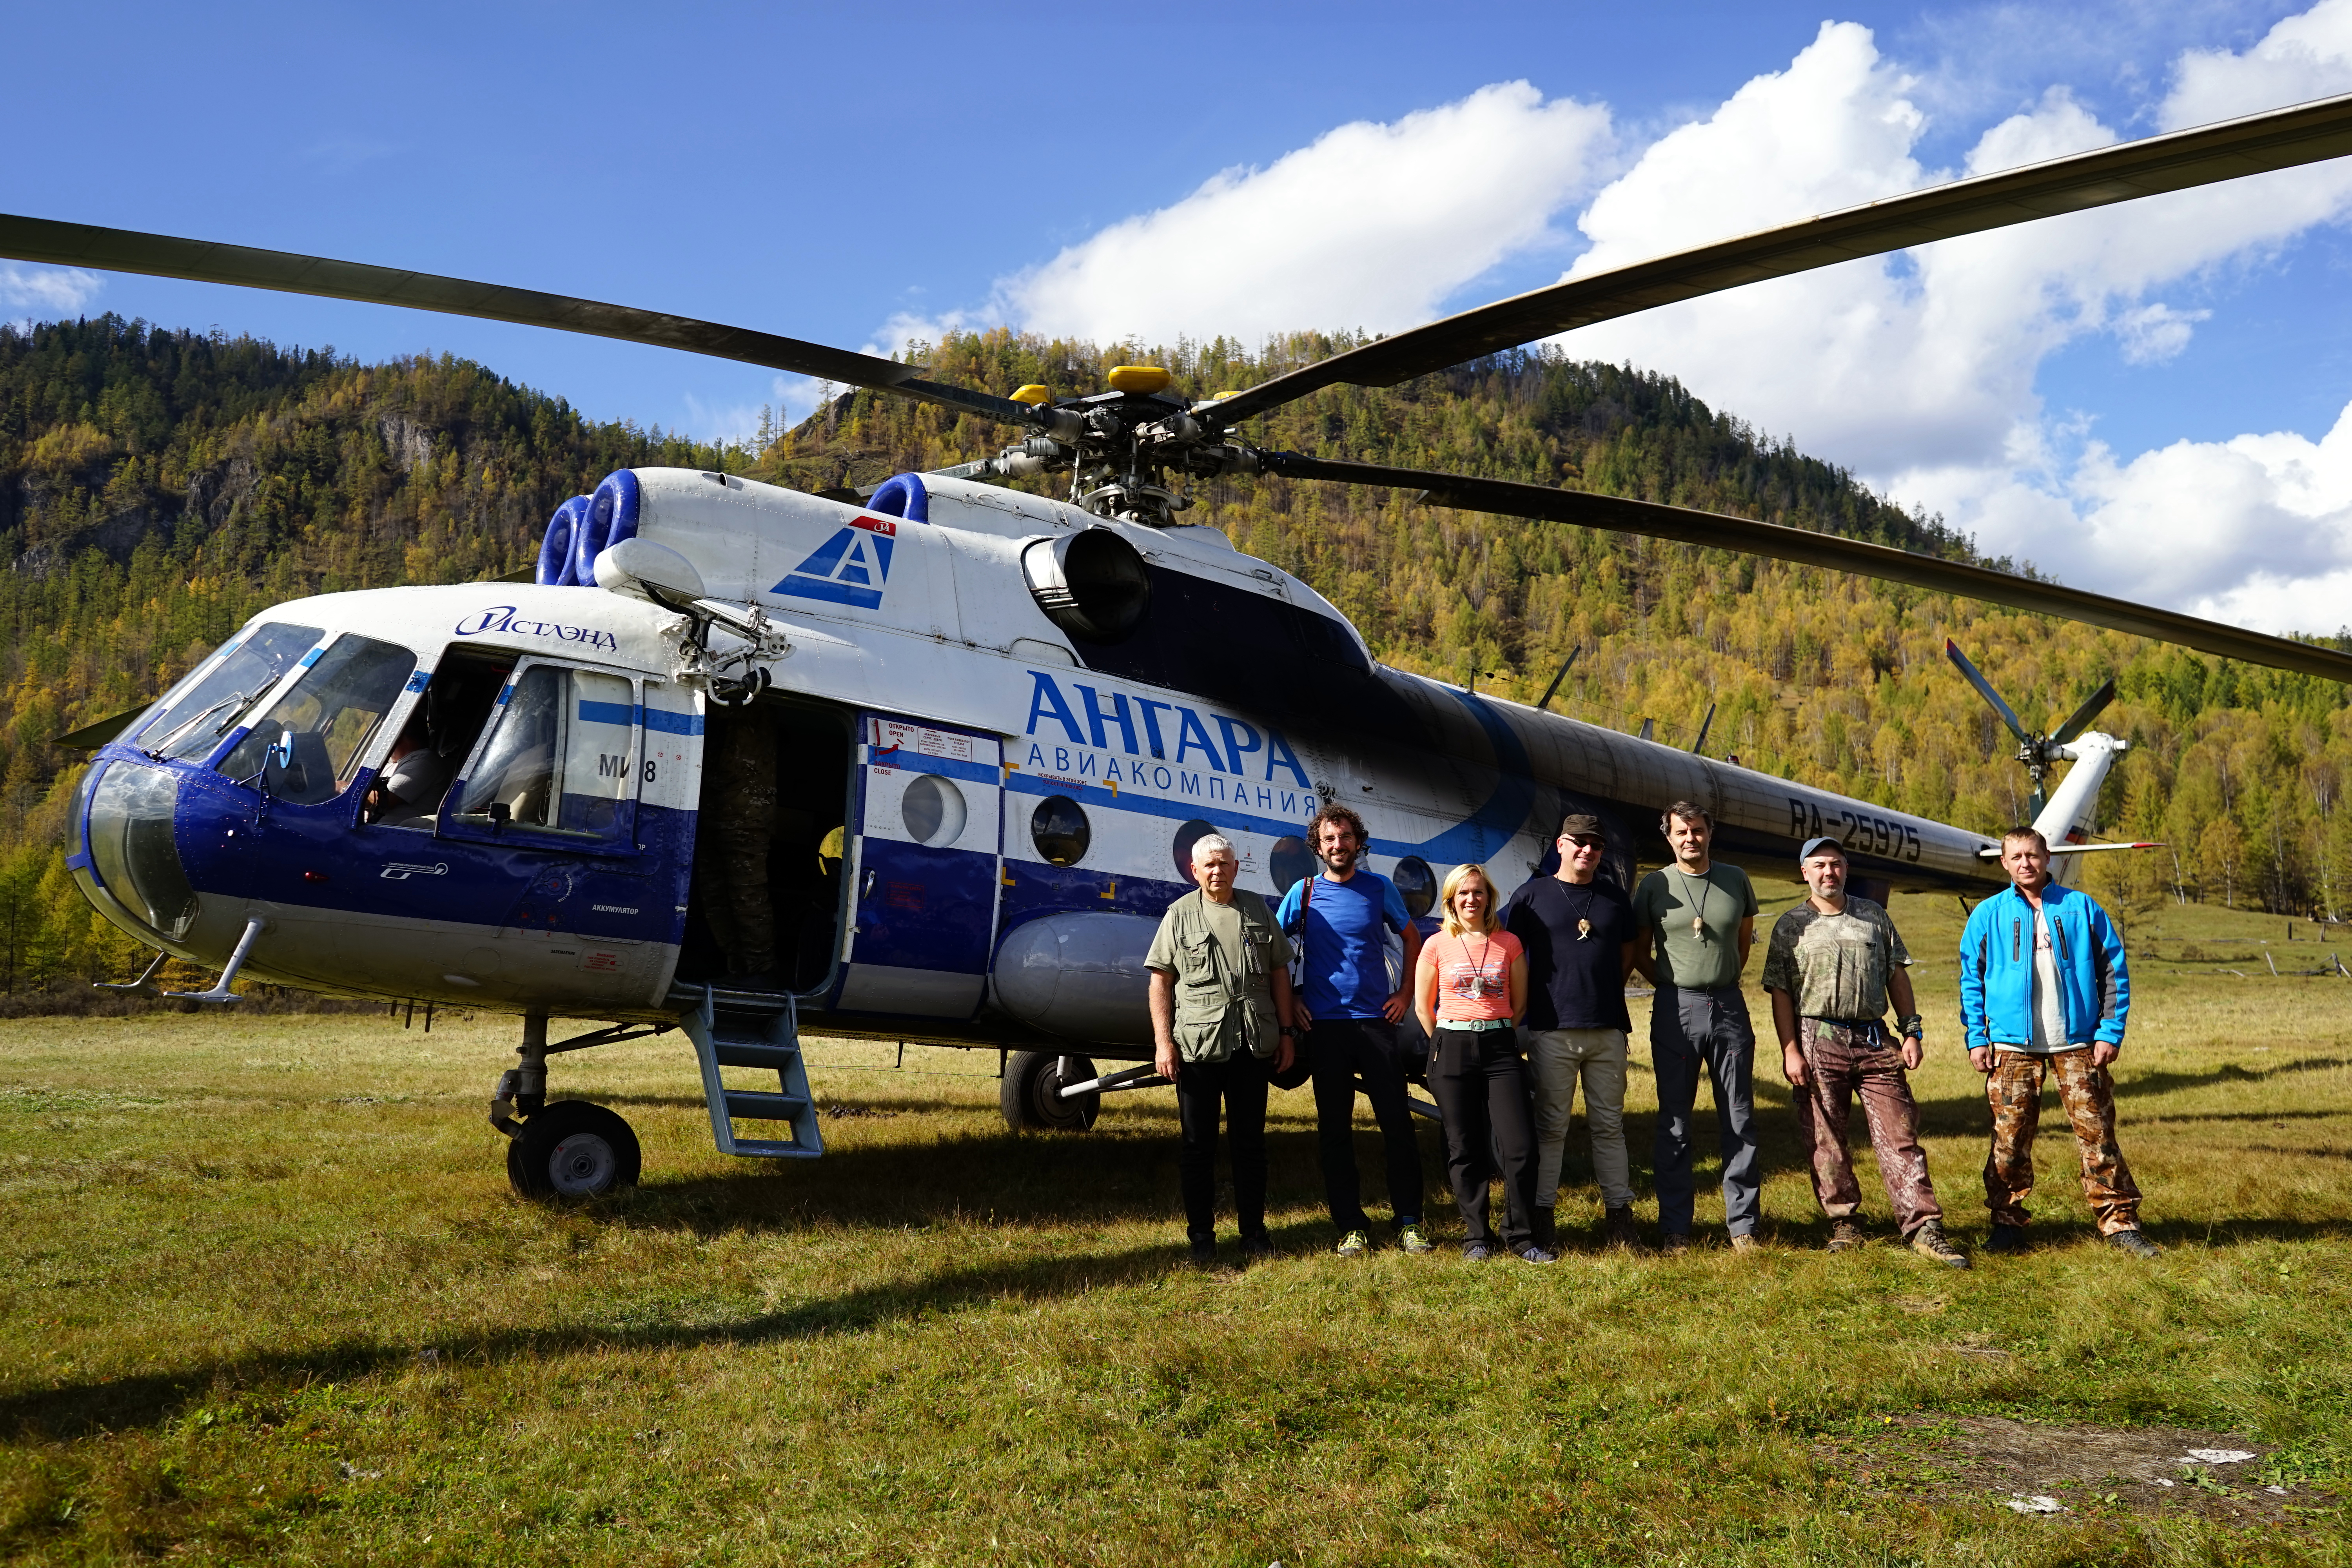 Tofalaria elicottero storico Mi-8 - Russia Trekking